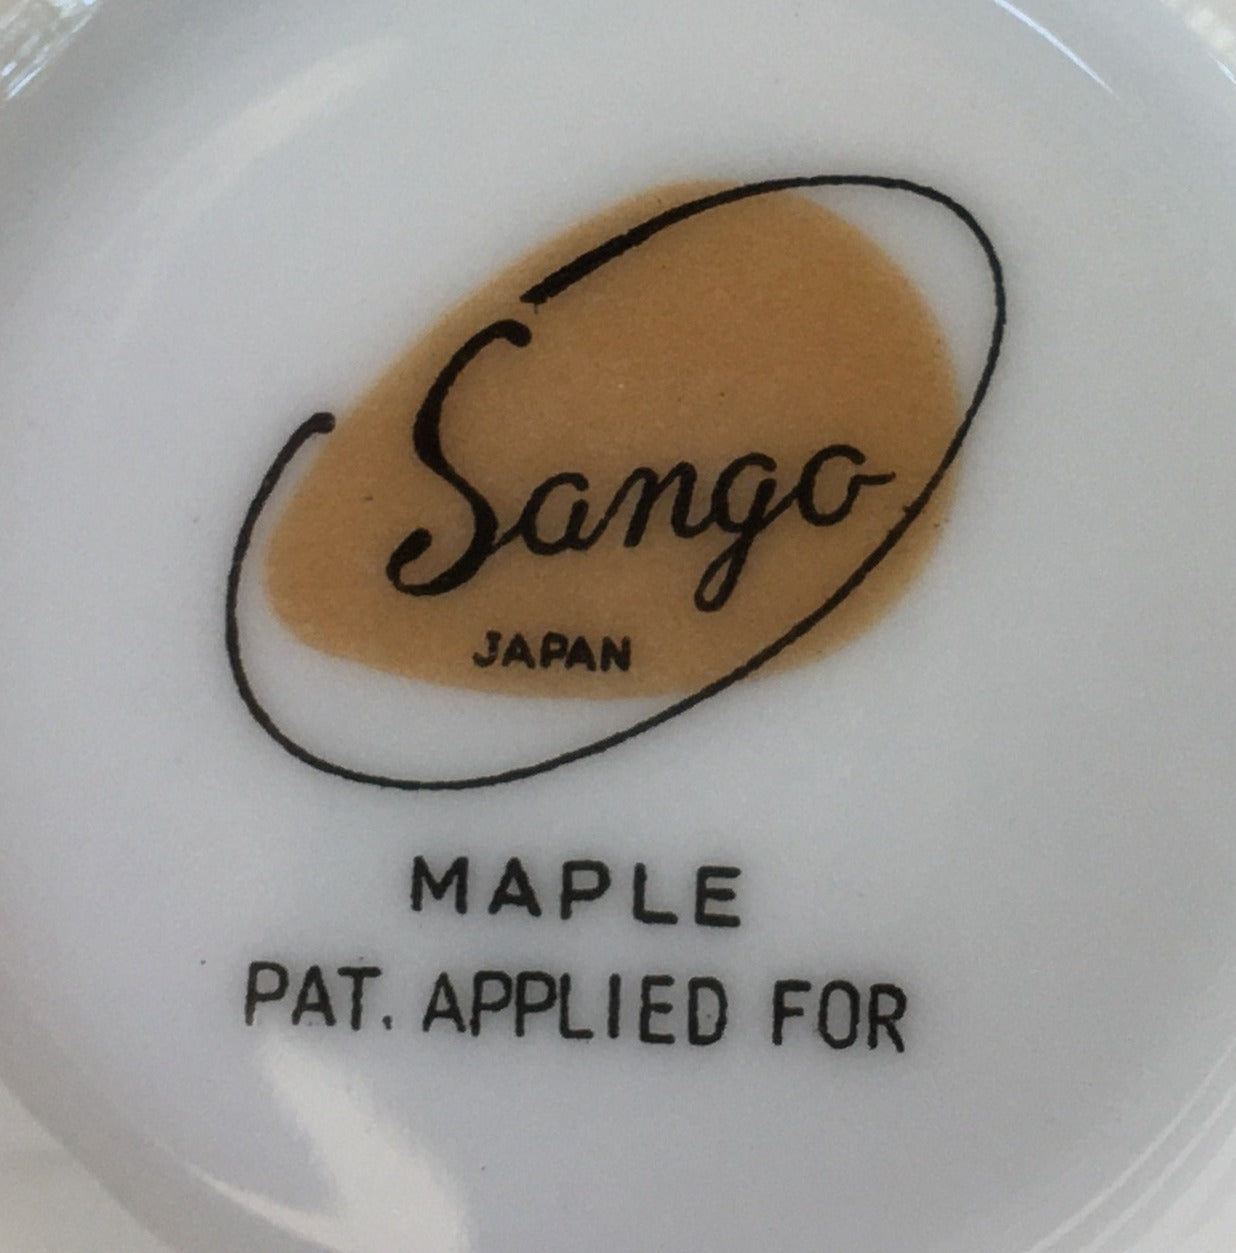 Sango china Maple pattern 6 piece place setting